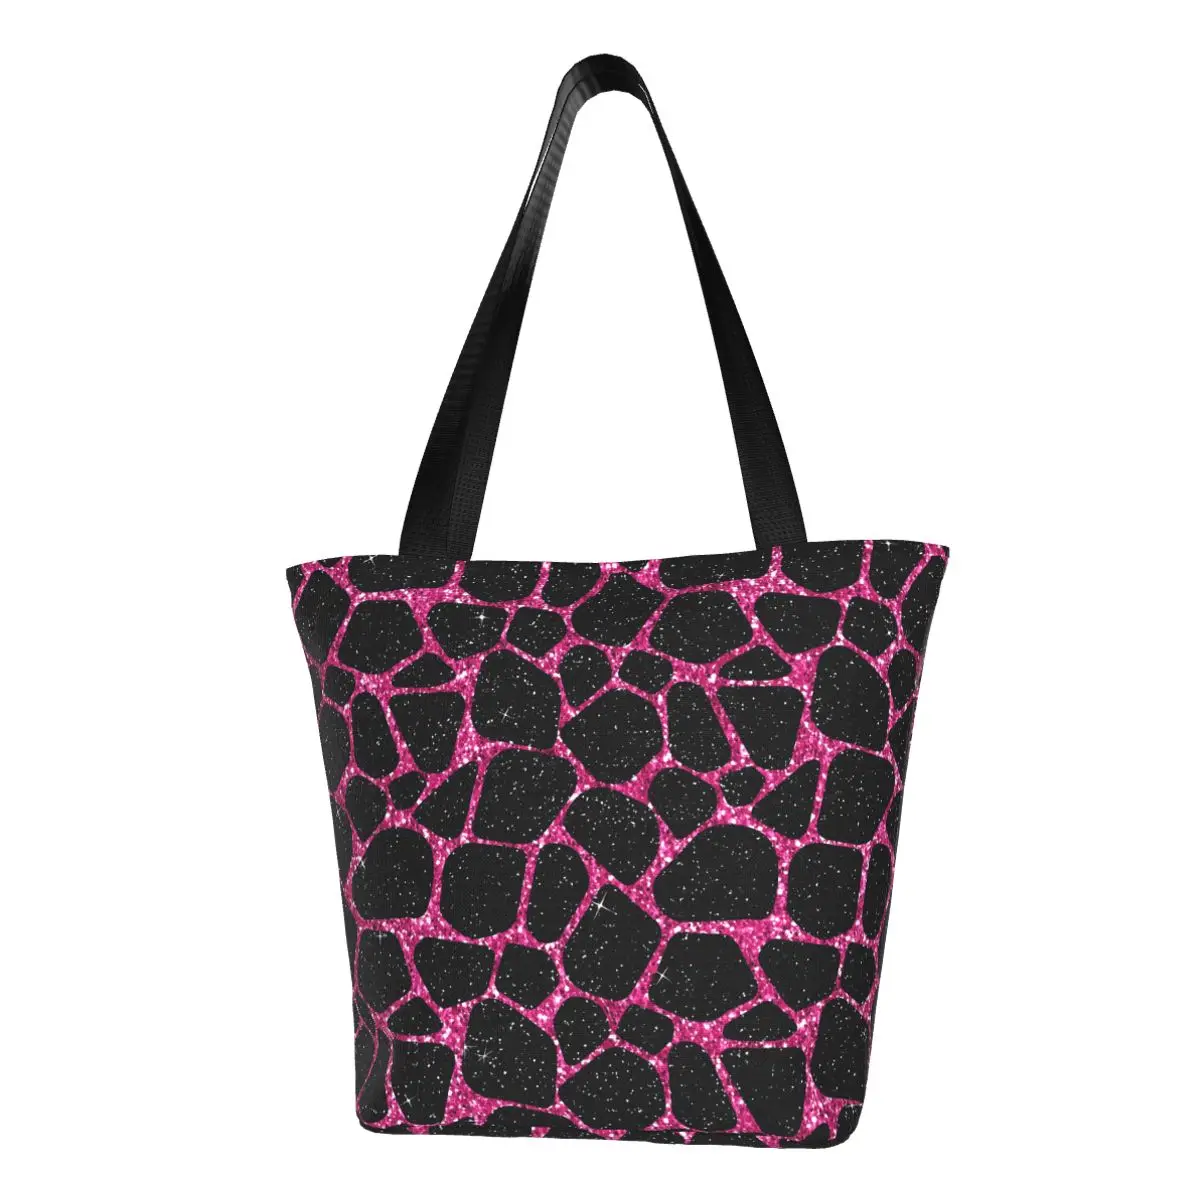 

Розовая и черная сумка-шоппер с жирафом, повседневные сумки с животным принтом, сумка-тоут из полиэстера для колледжа, женская пляжная сумка с графическим рисунком